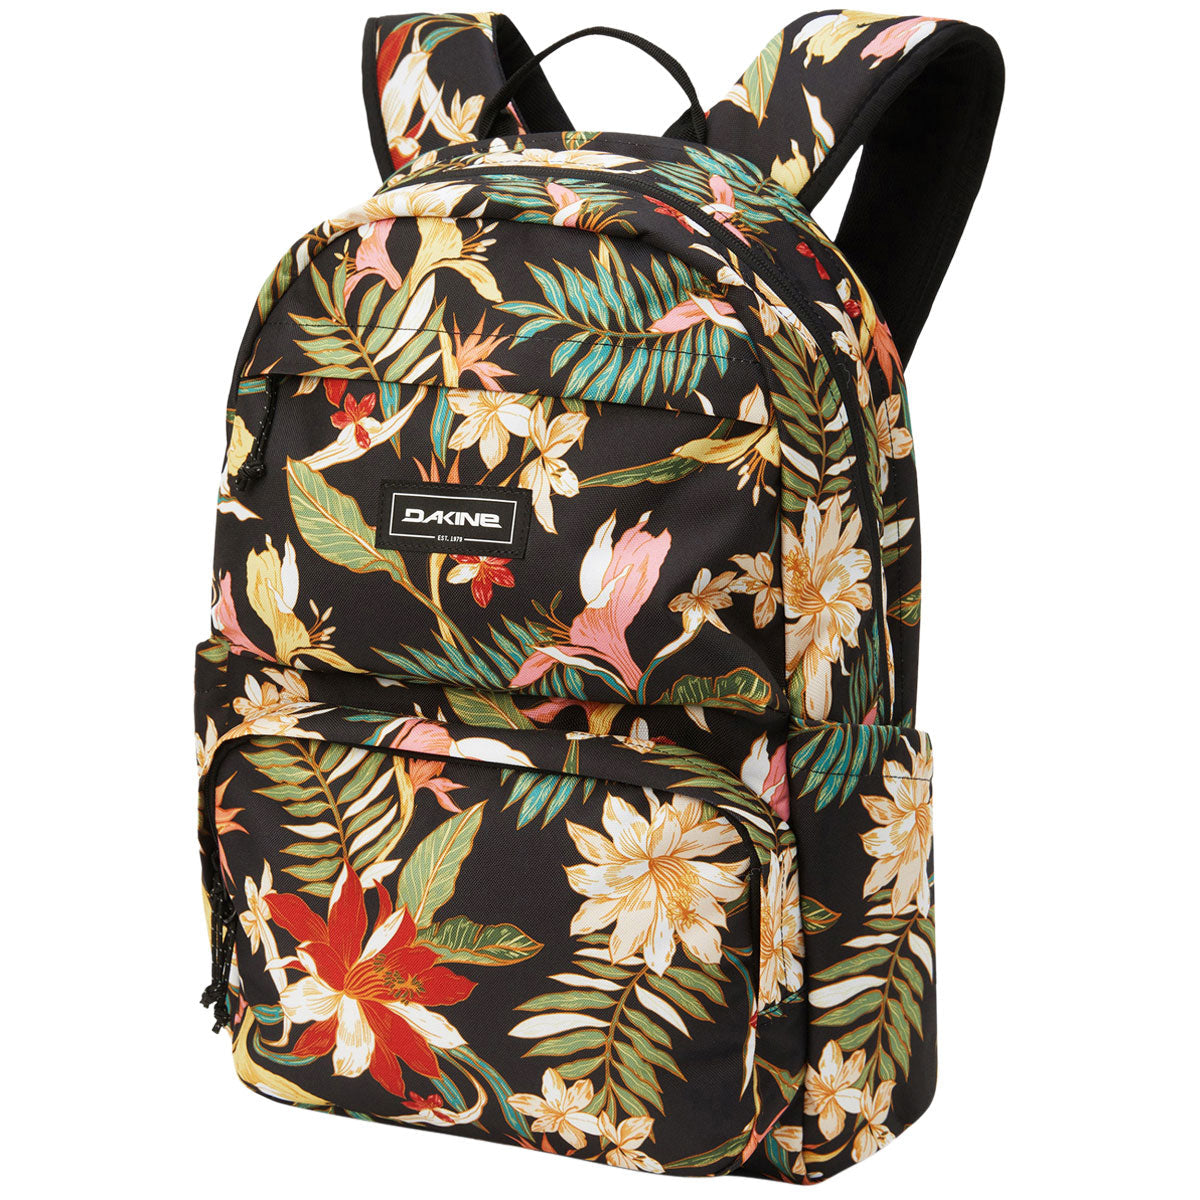 Dakine Method 25L Backpack - Sunset Bloom image 1